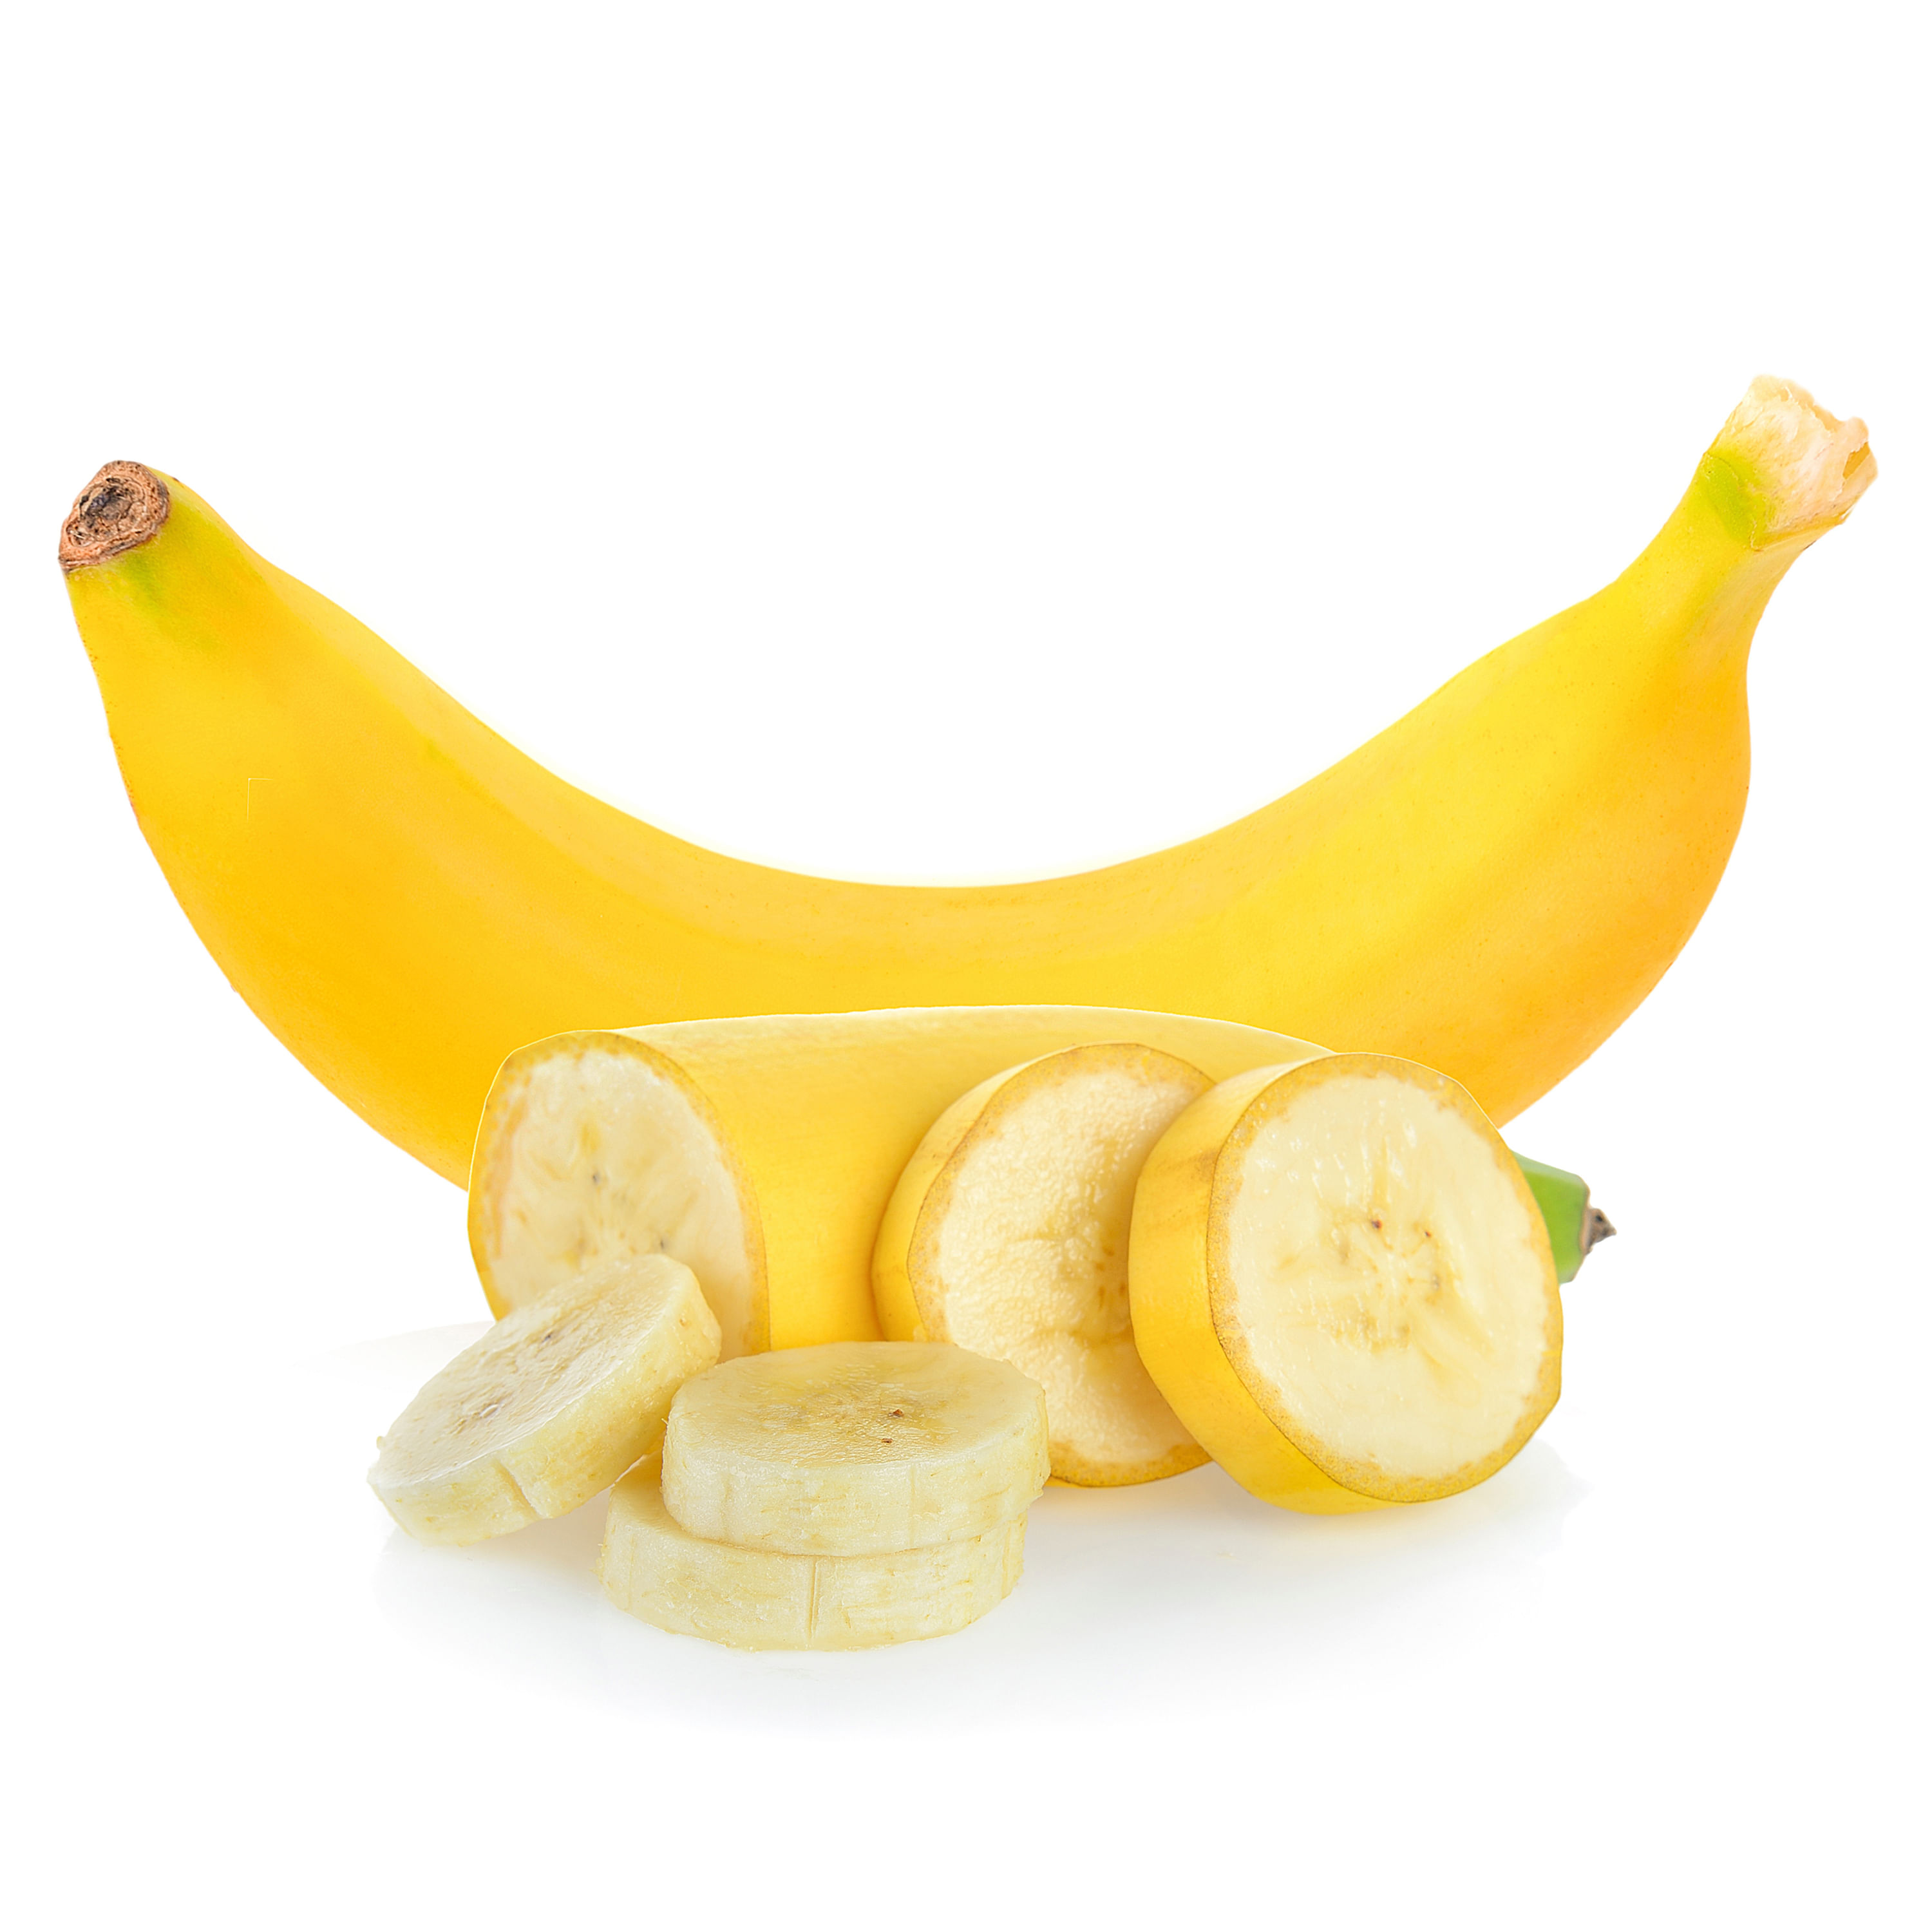 Banano-Hortifruti-Precio-Por-Libra-4-Unidades-Por-Libra-Aproximadamente-1-65